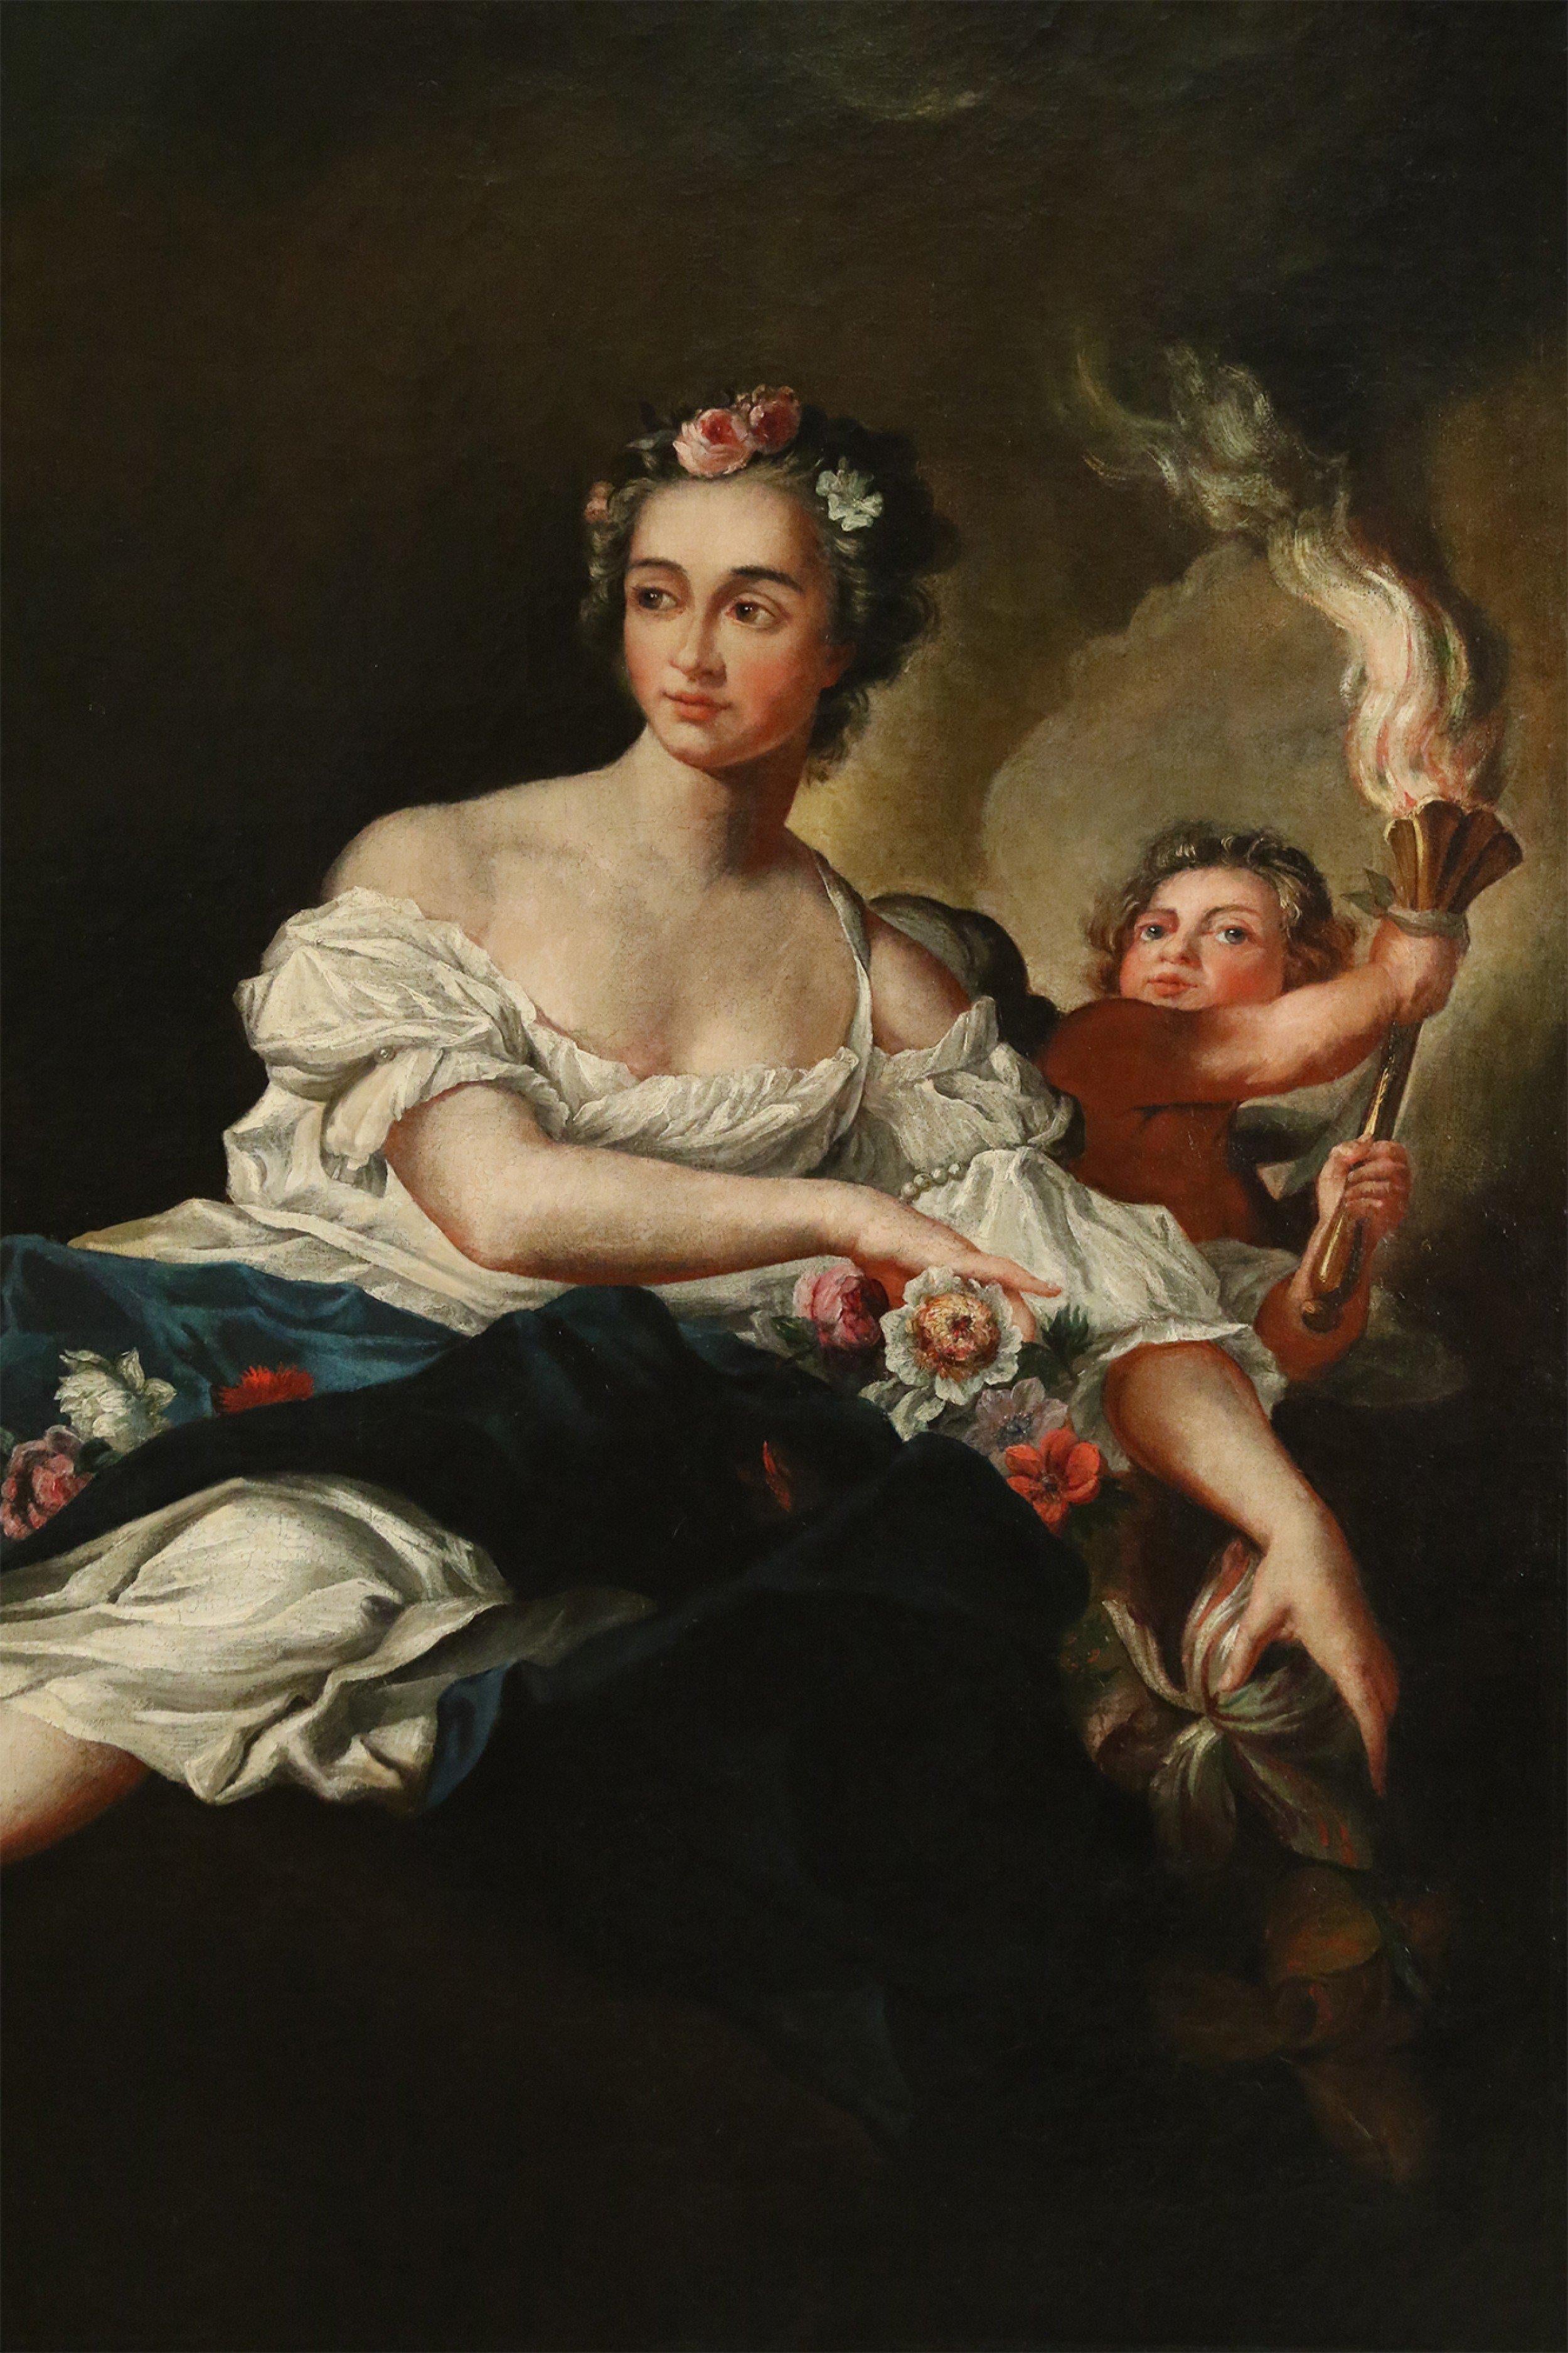 Grande peinture à l'huile française (18e-19e siècle) représentant une femme tenant des fleurs et un enfant portant une torche dans un cadre rectangulaire orné de bois doré sculpté.